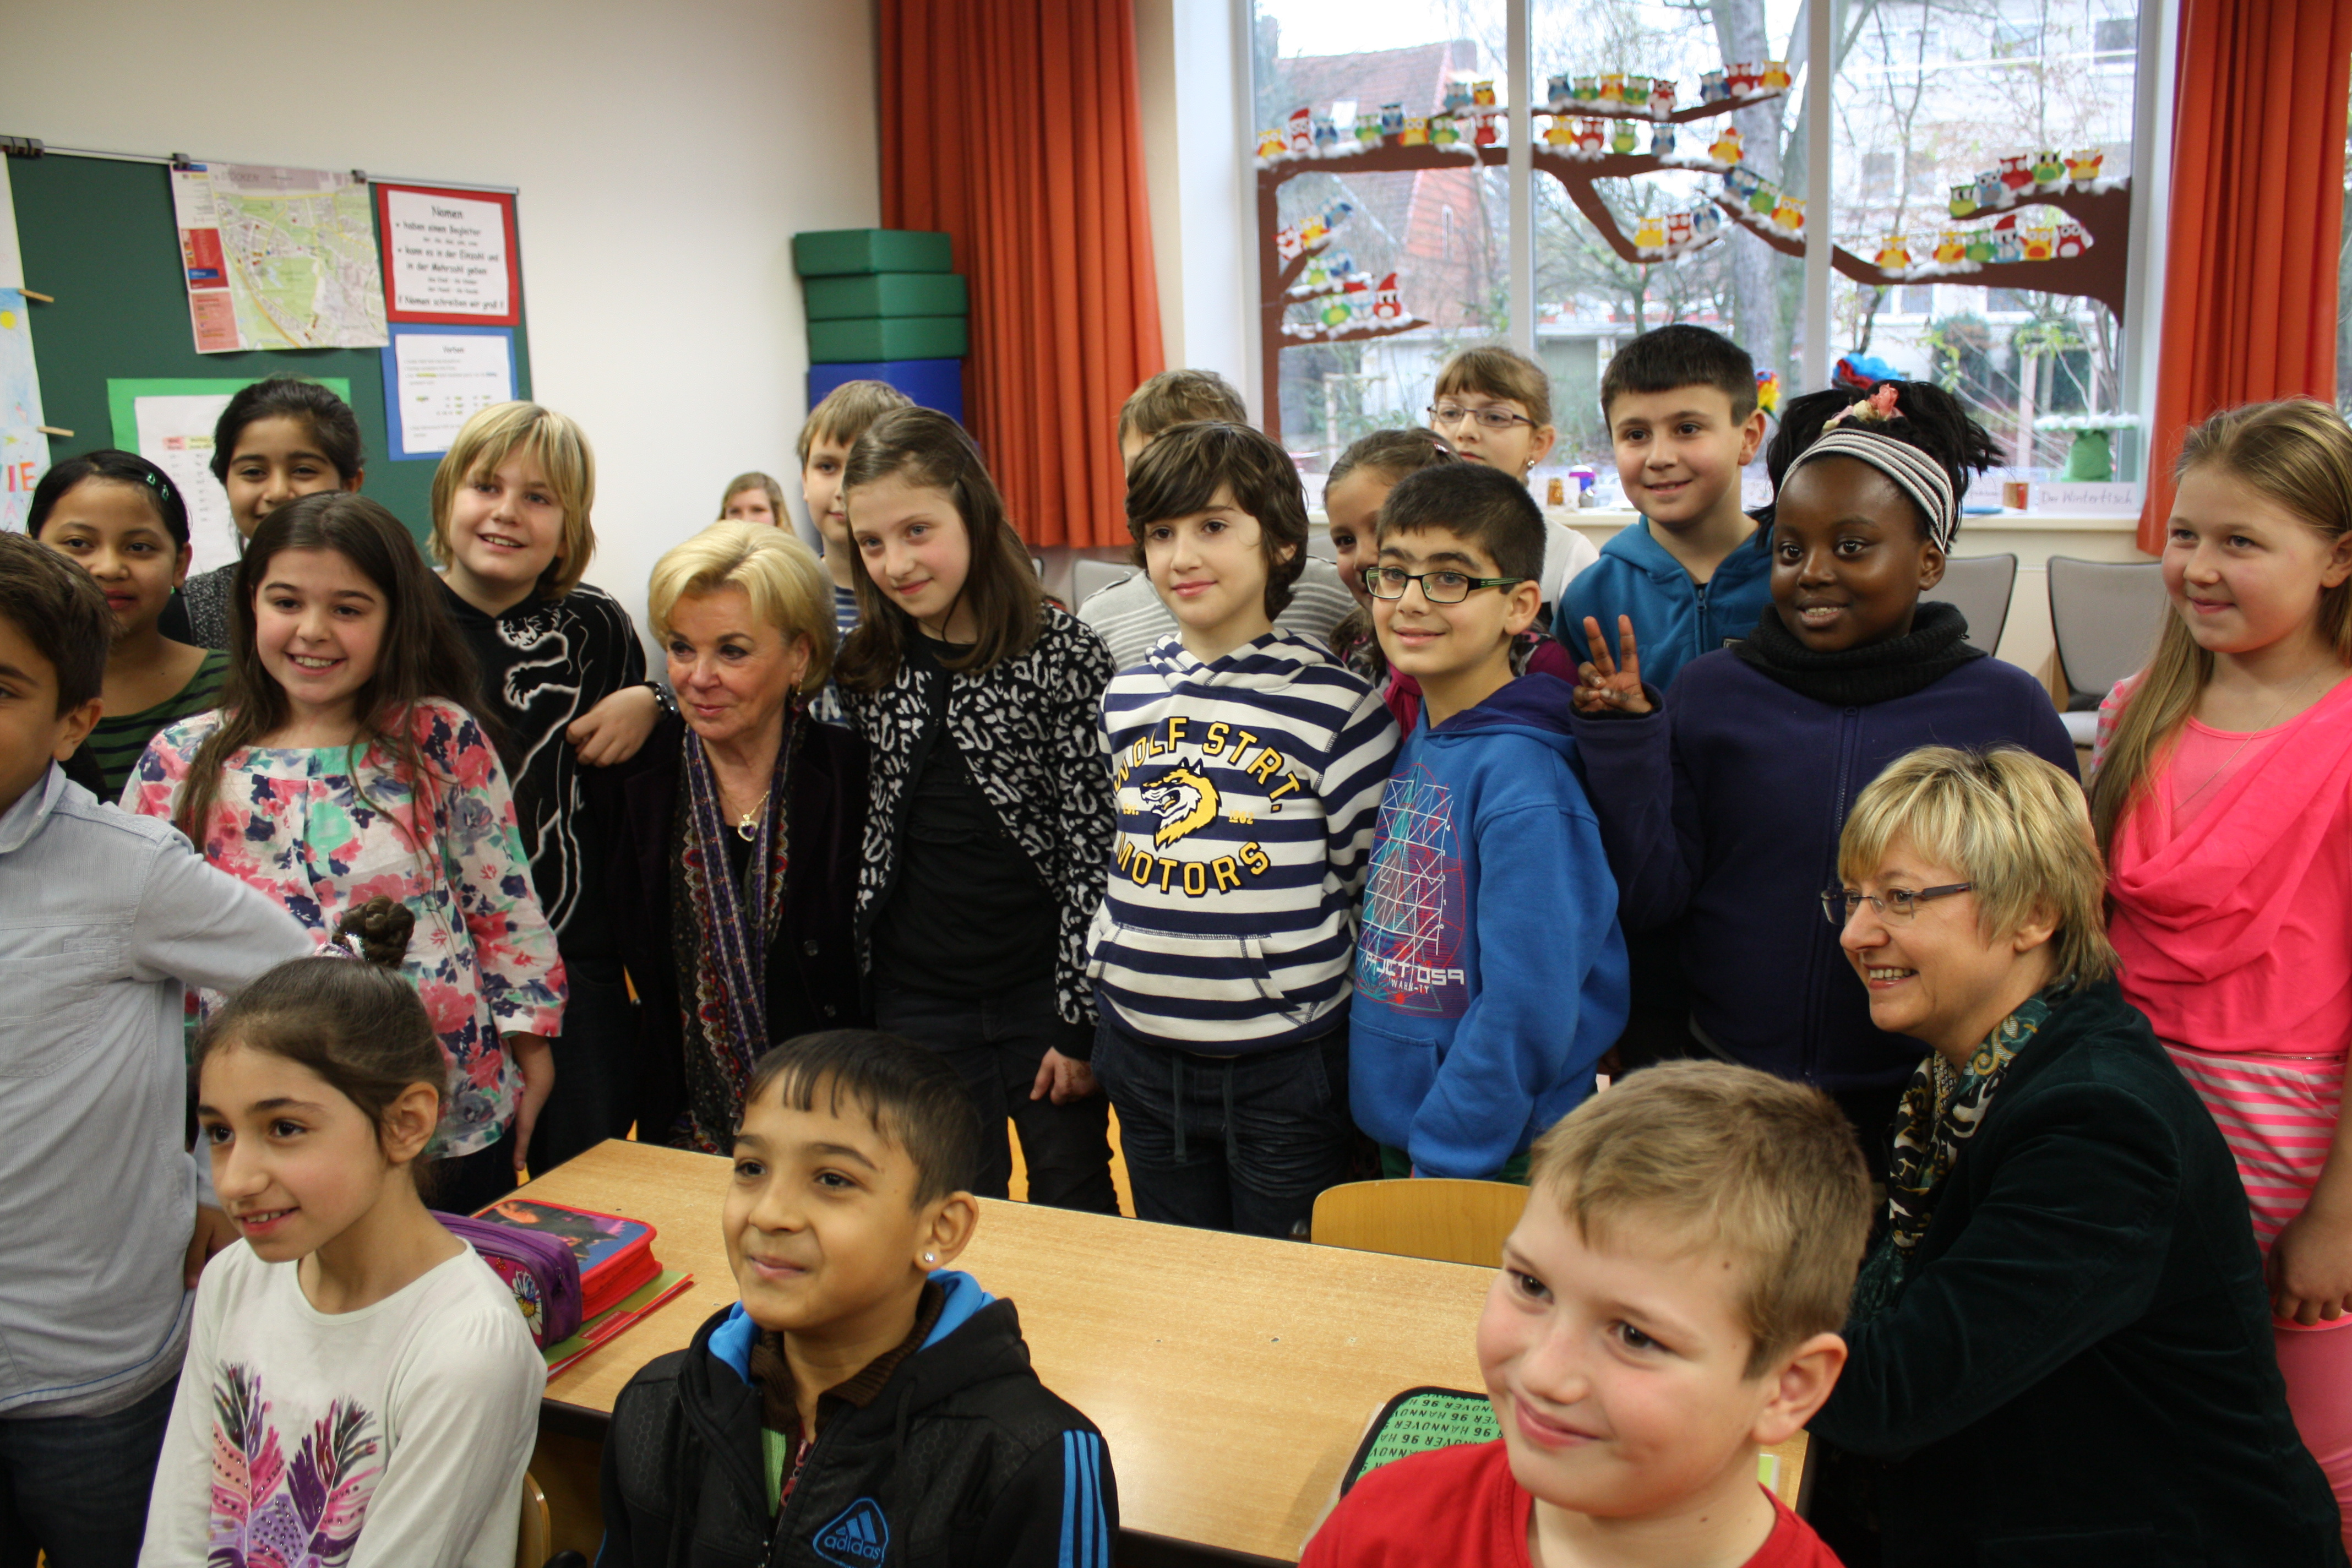 Liz Mohn umgeben von vielen Schülern in einem Klassenraum